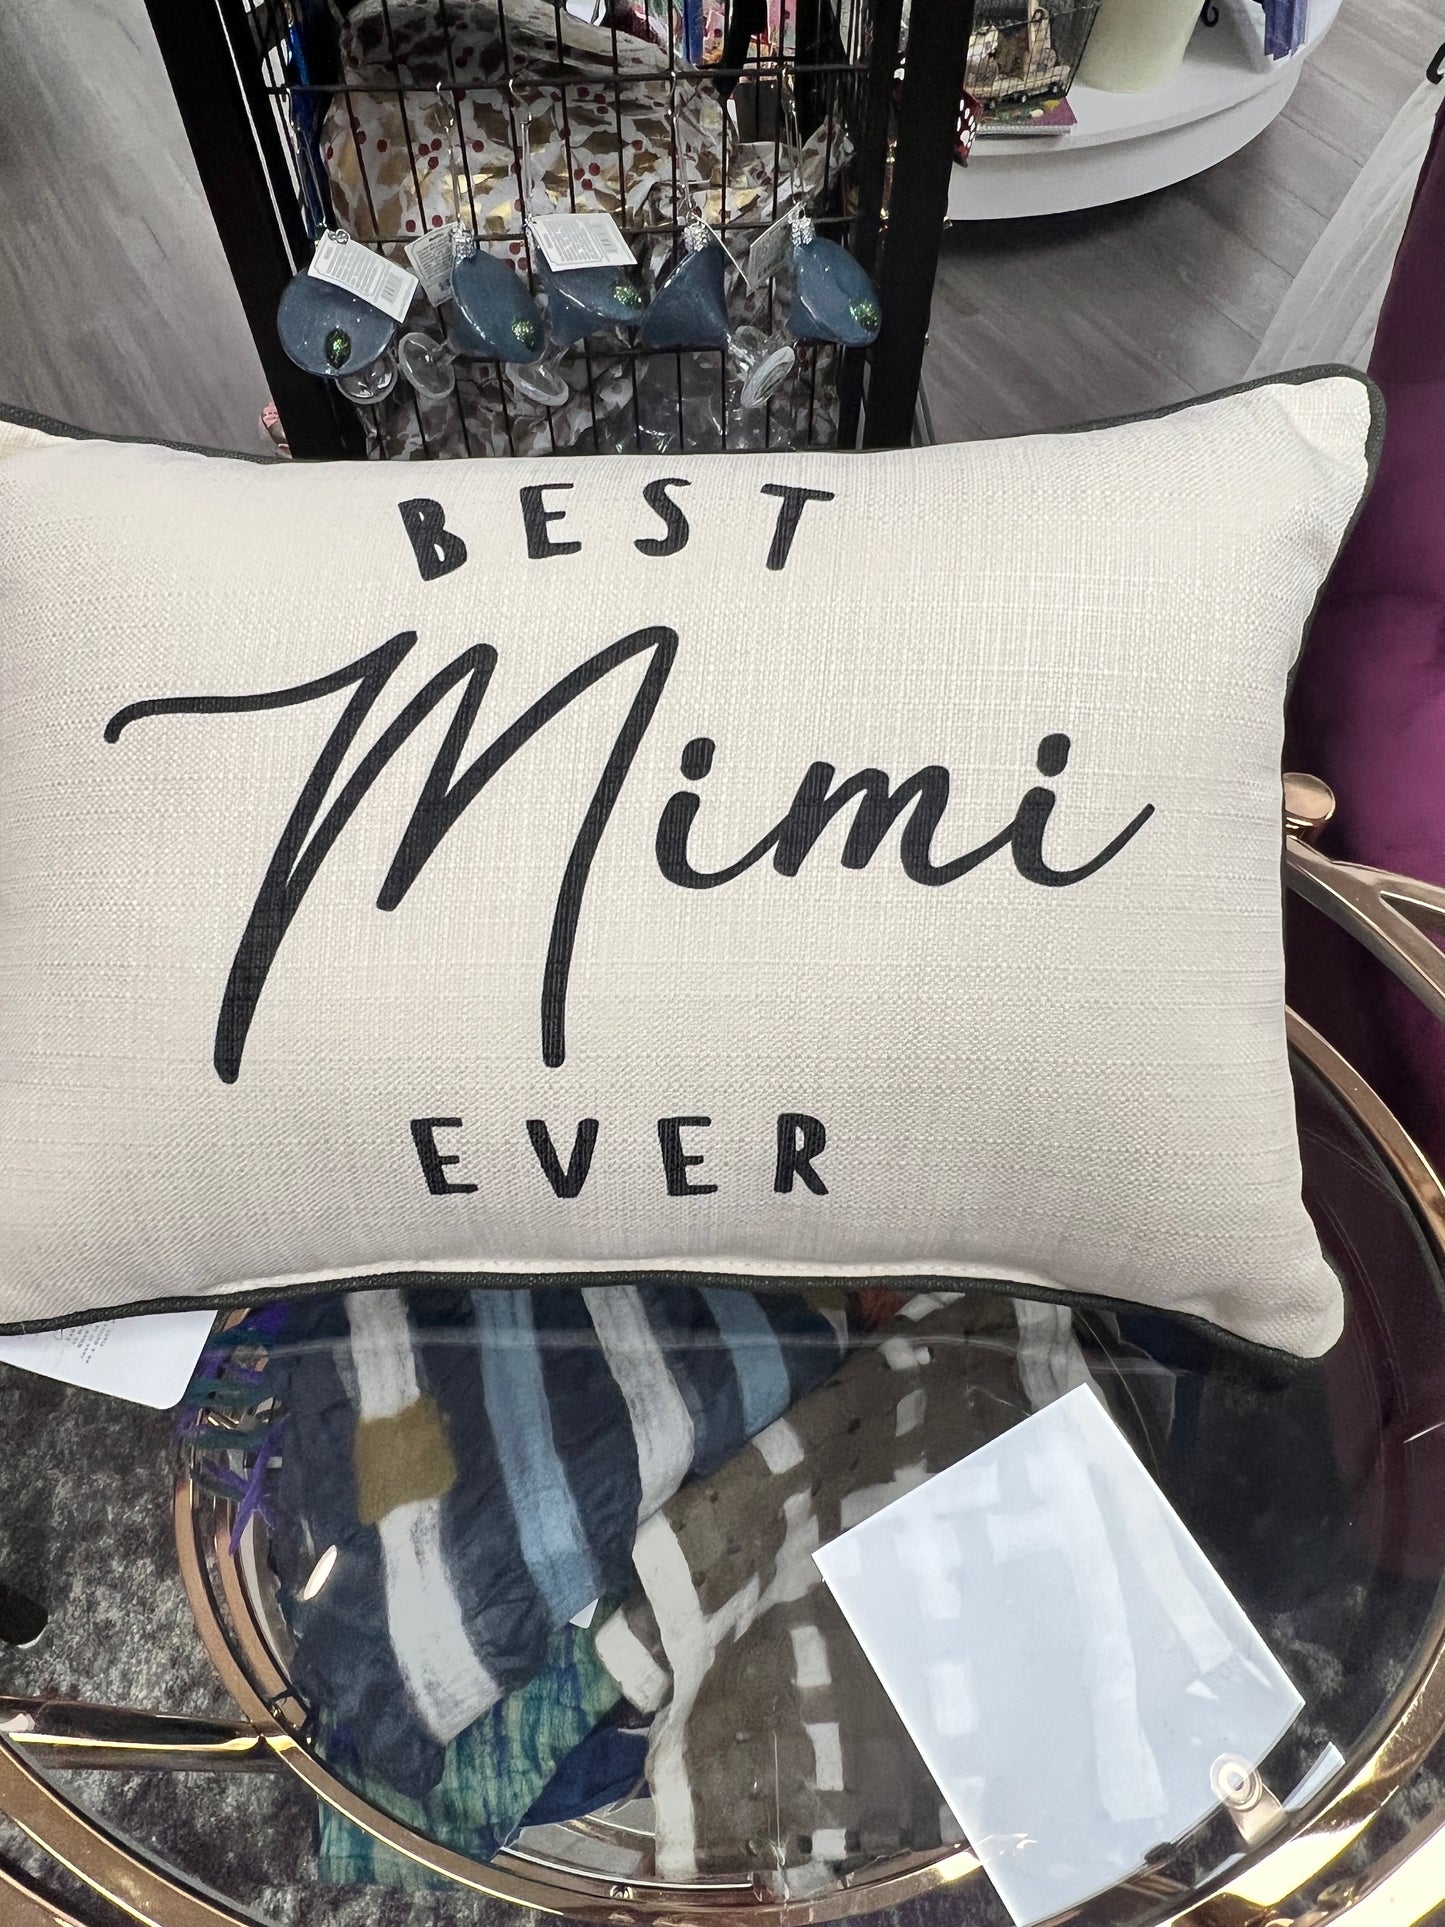 Best Mimi Ever Pillow